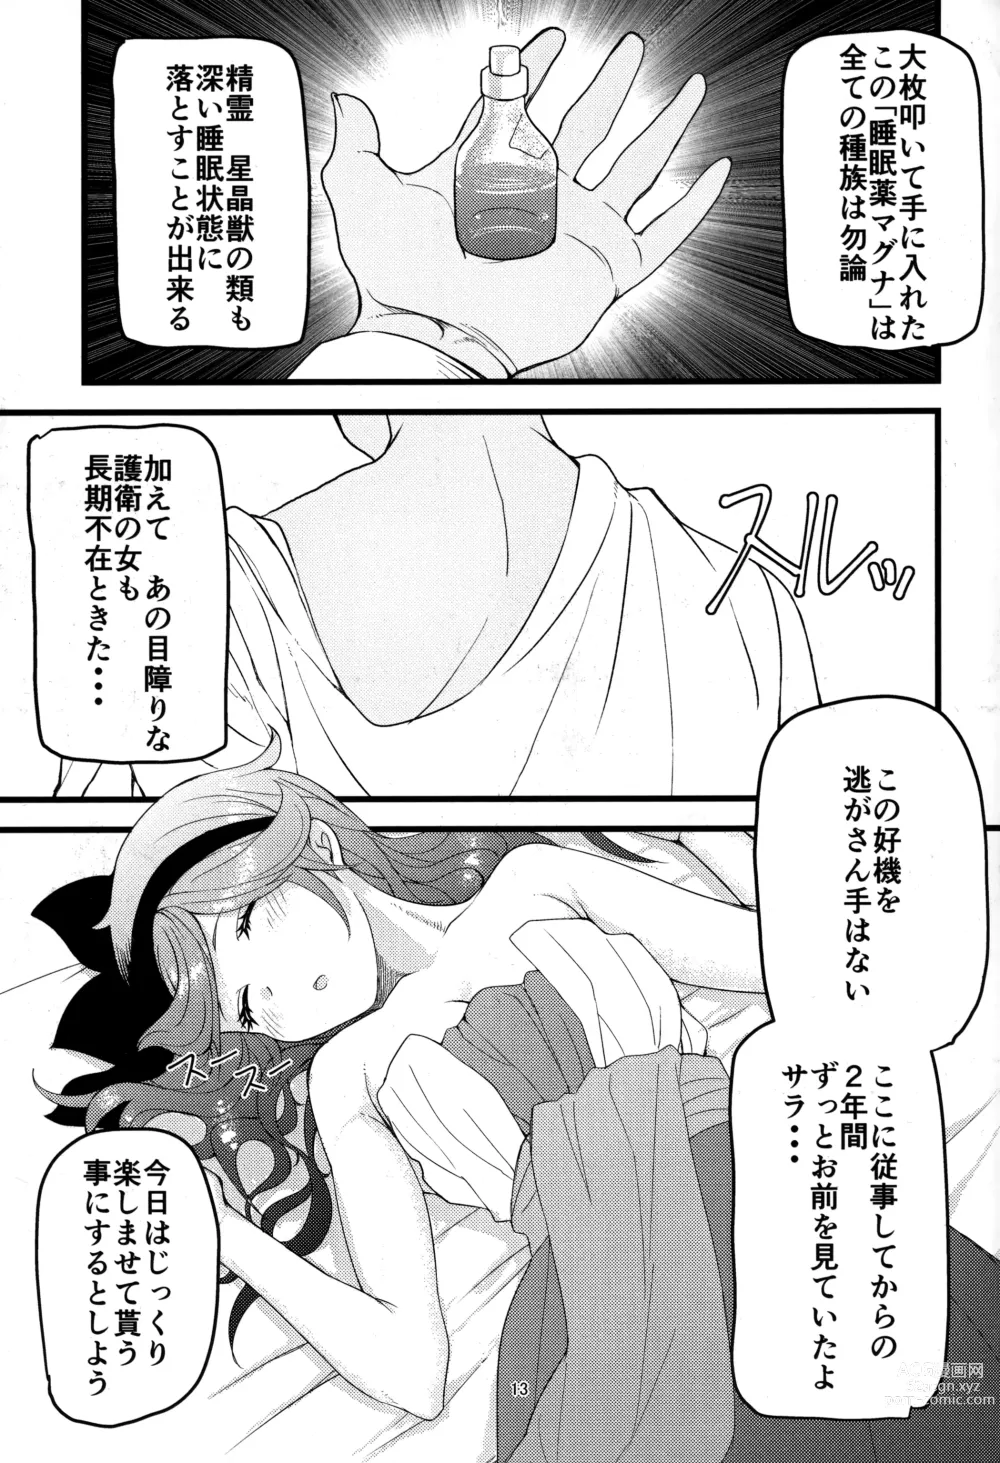 Page 12 of doujinshi Kowaku no Miko